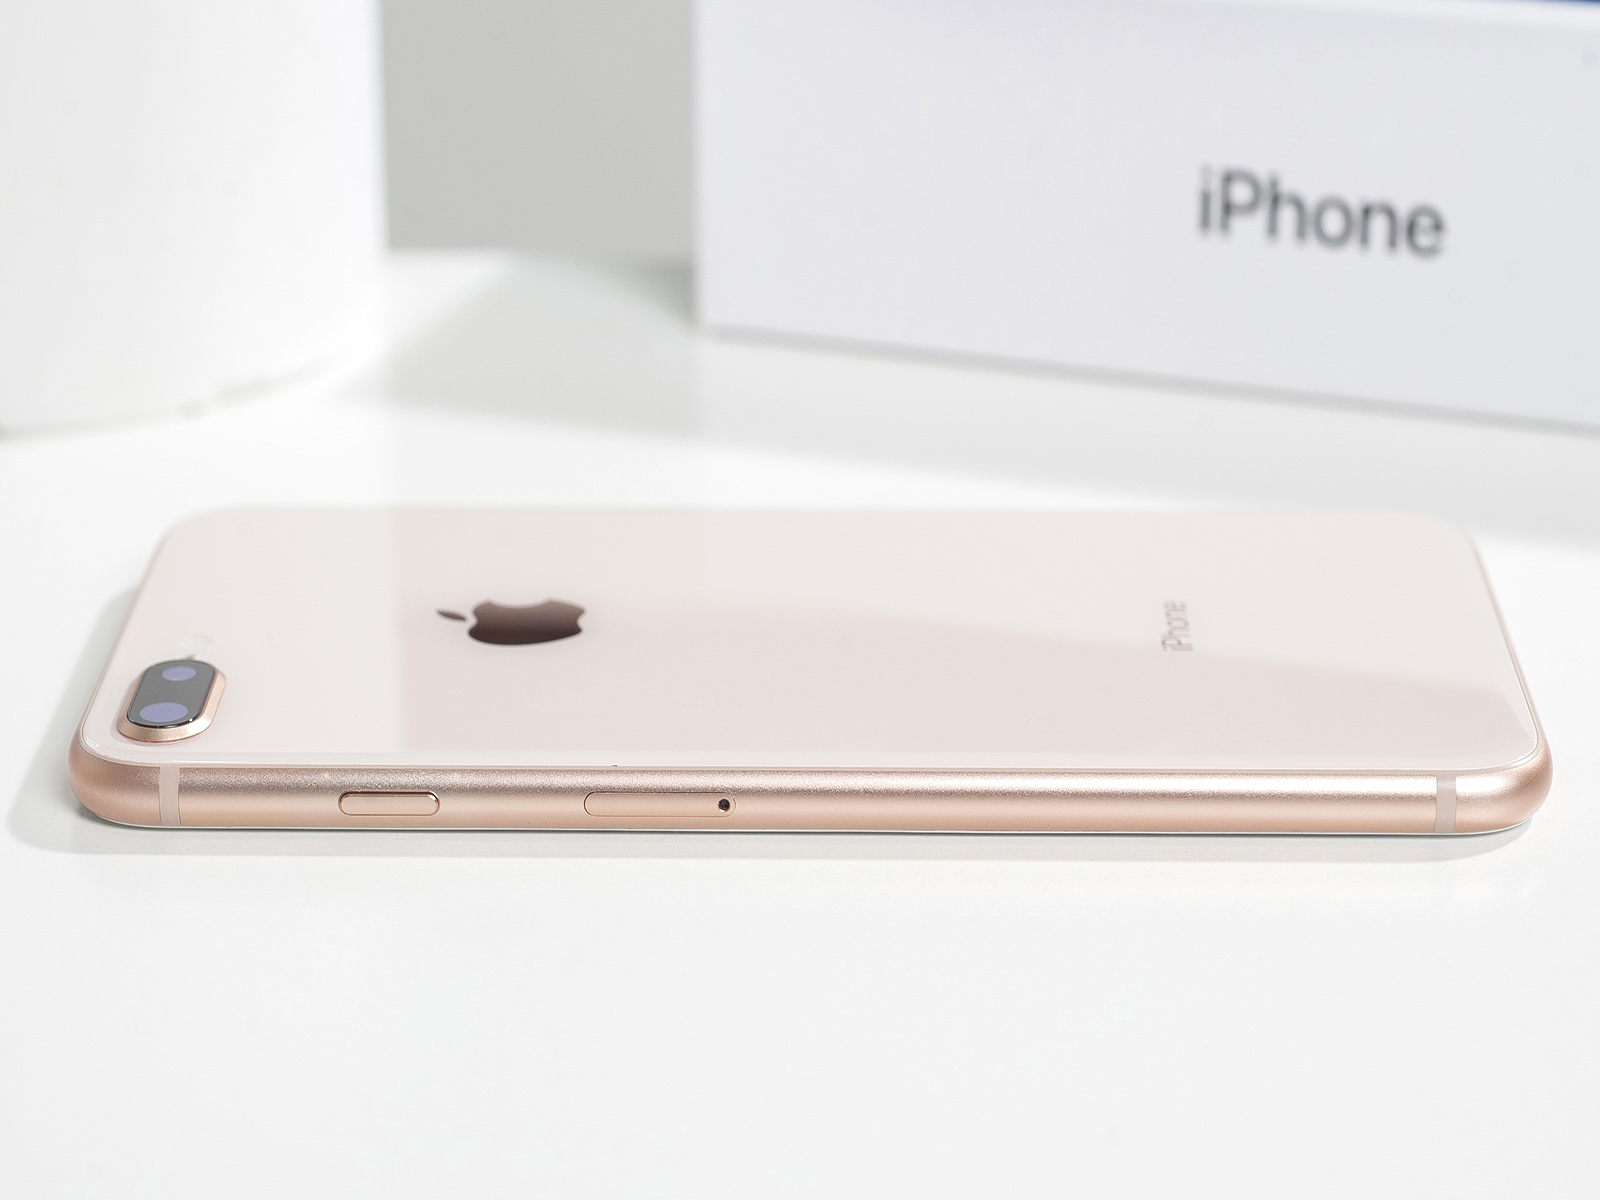 Apple ha advertido de graves vulnerabilidades de seguridad en iPhone, iPad y Mac